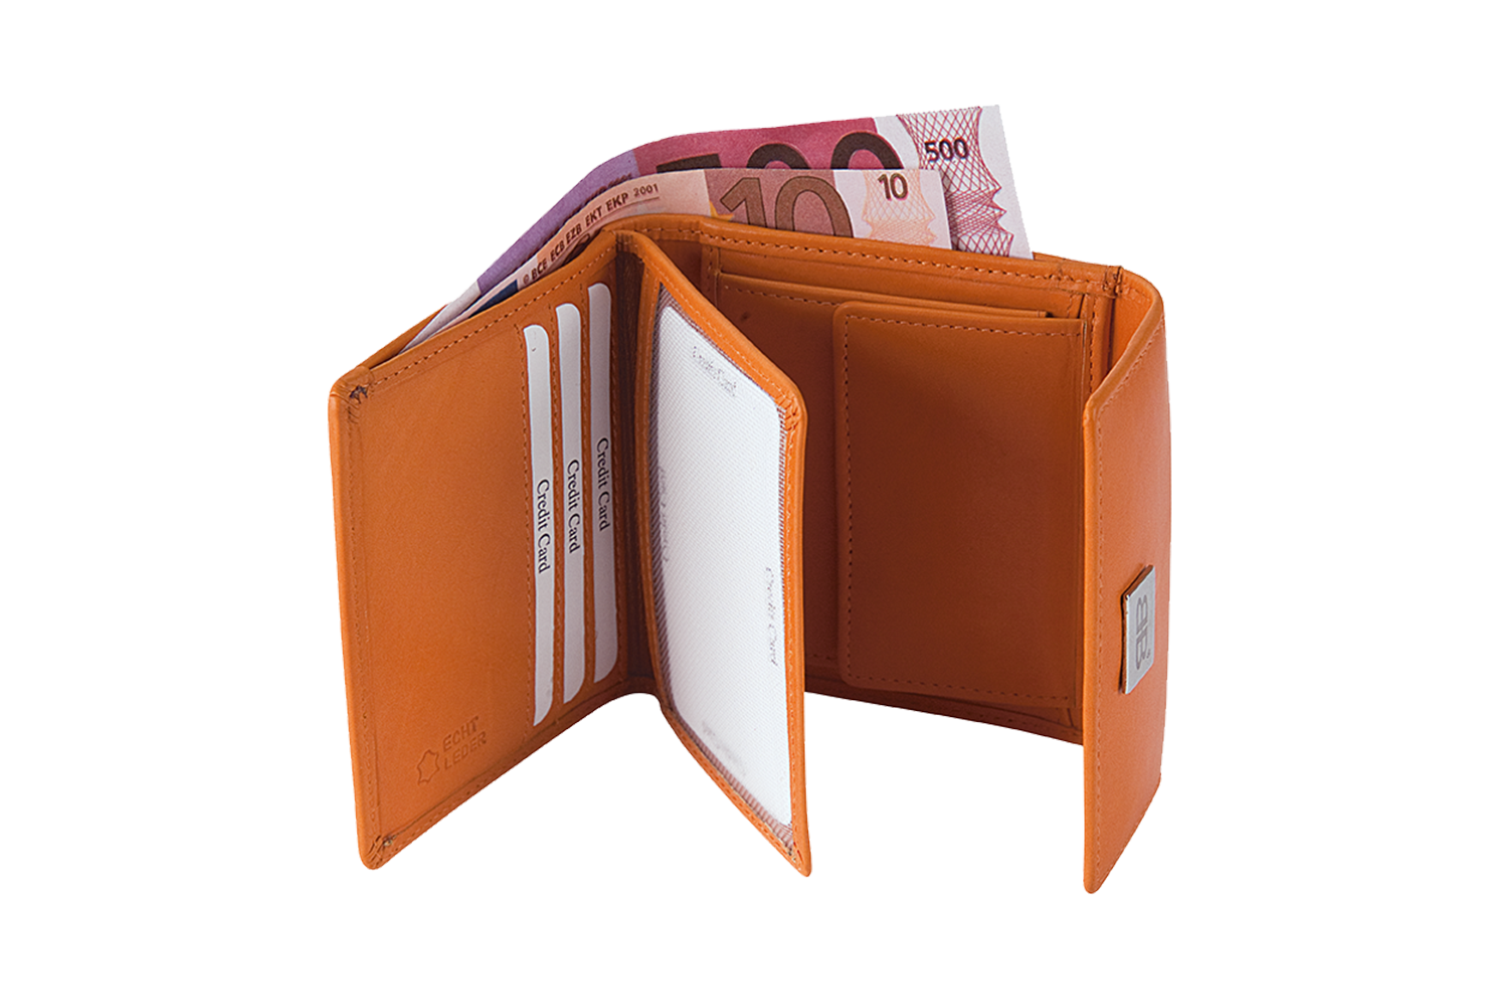 Kleine Damenbörse Minibörse mit Flügelwand in schwarz LEDER RFID - 859-019-60